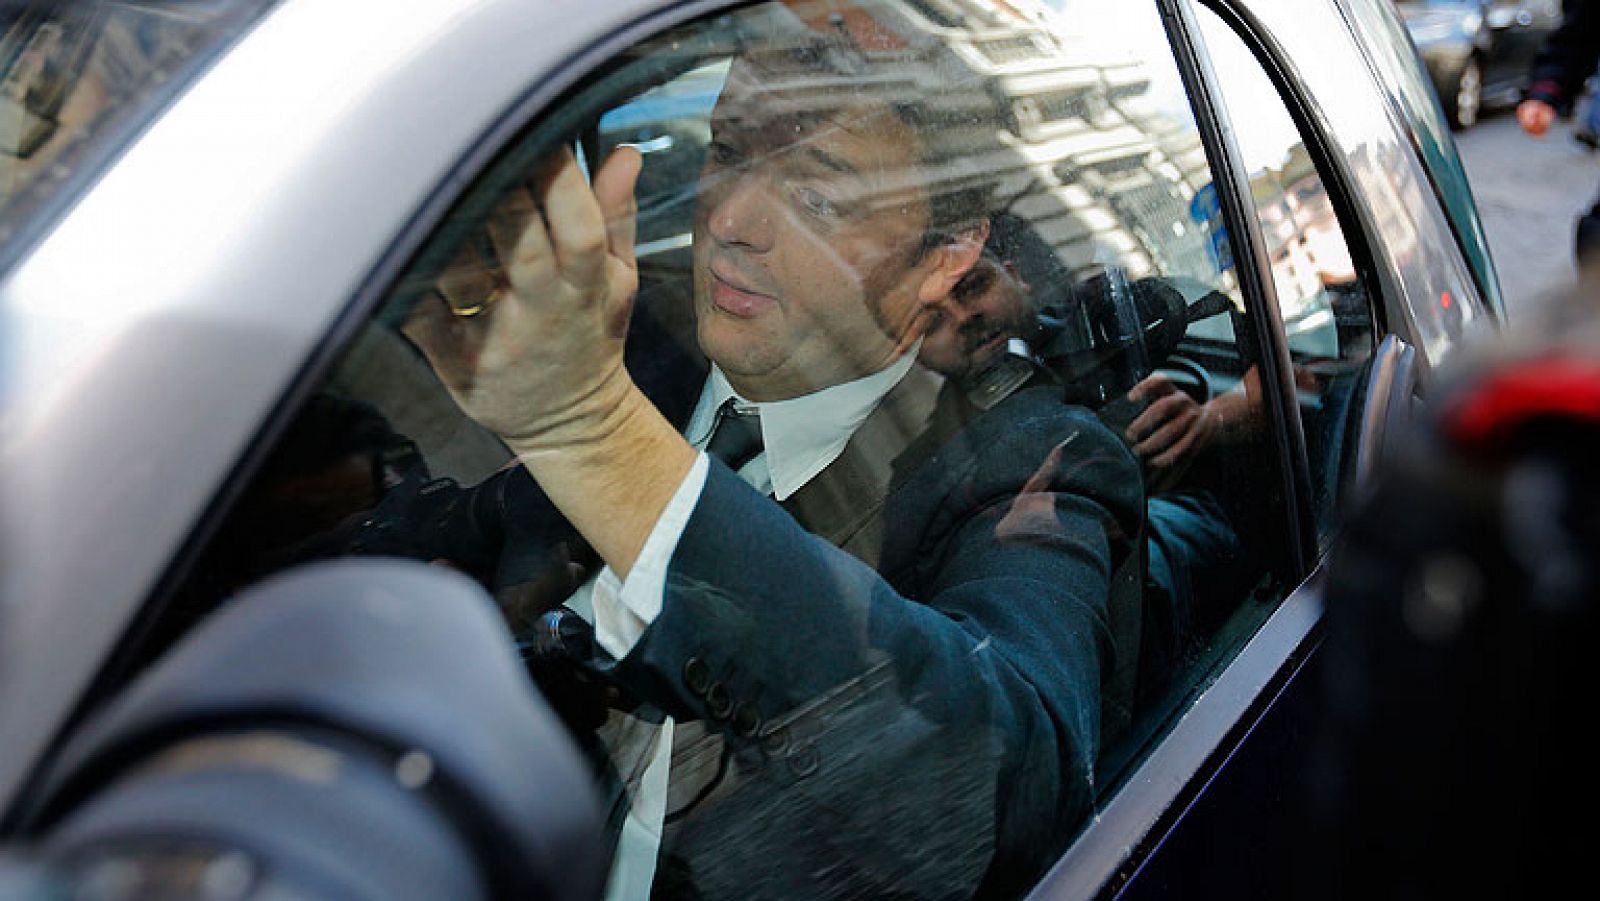  El primer ministro de Italia, Enrico Letta, ha atajado este miércoles los rumores que apuntan a un relevo en su Gobierno al presentar su pacto "Compromiso Italia 2014" con el que pretende salvar su Ejecutivo, asediado por el resto de las fuerzas políticas, incluida su propia formación, el Partido Demócrata (PD). Letta compareció ante la prensa tras reunirse con el secretario general de su partido, Matteo Renzi, quien se ha convertido en su principal rival y que, con el sobrenombre de "apisonadora", amenaza con acabar con la vieja política desde su aplastante victoria en las primarias del PD el pasado diciembre.